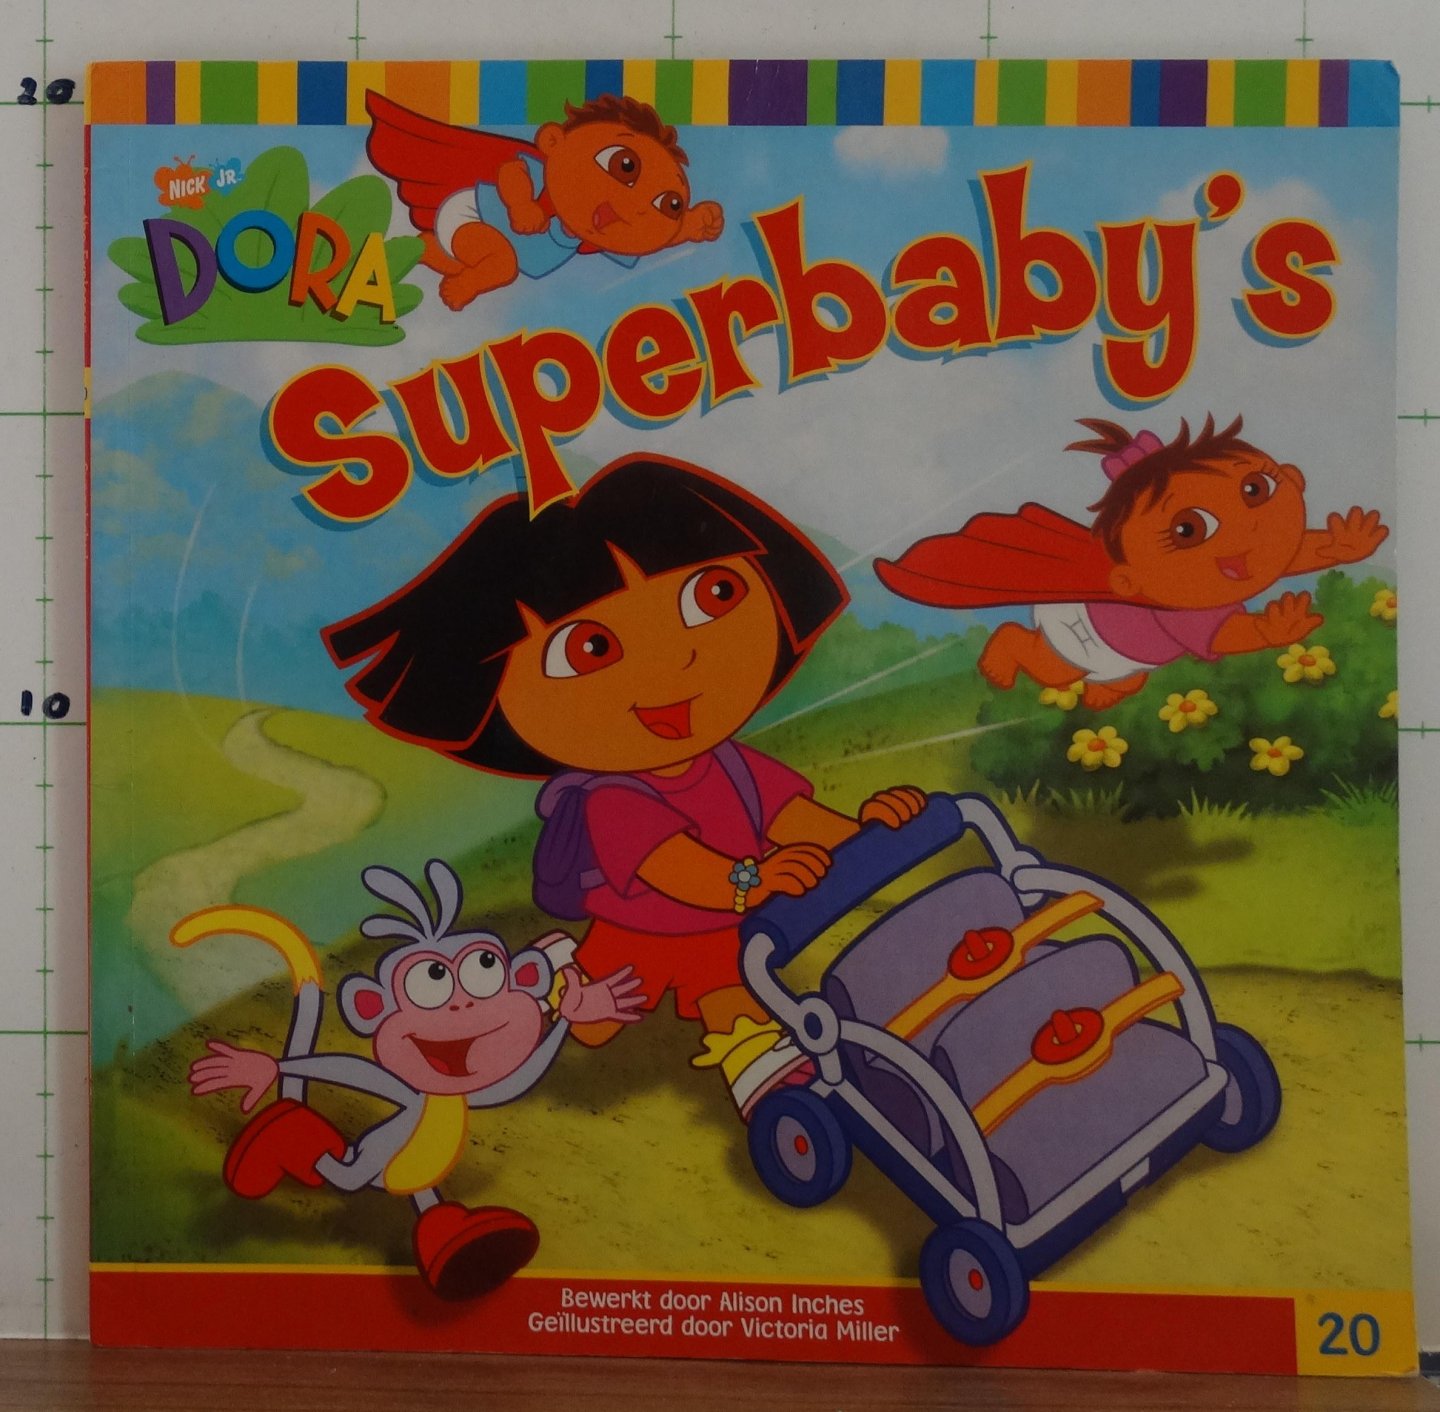 Inches, Alison - Miller, Victoria (ill.) - Dora  Super baby's